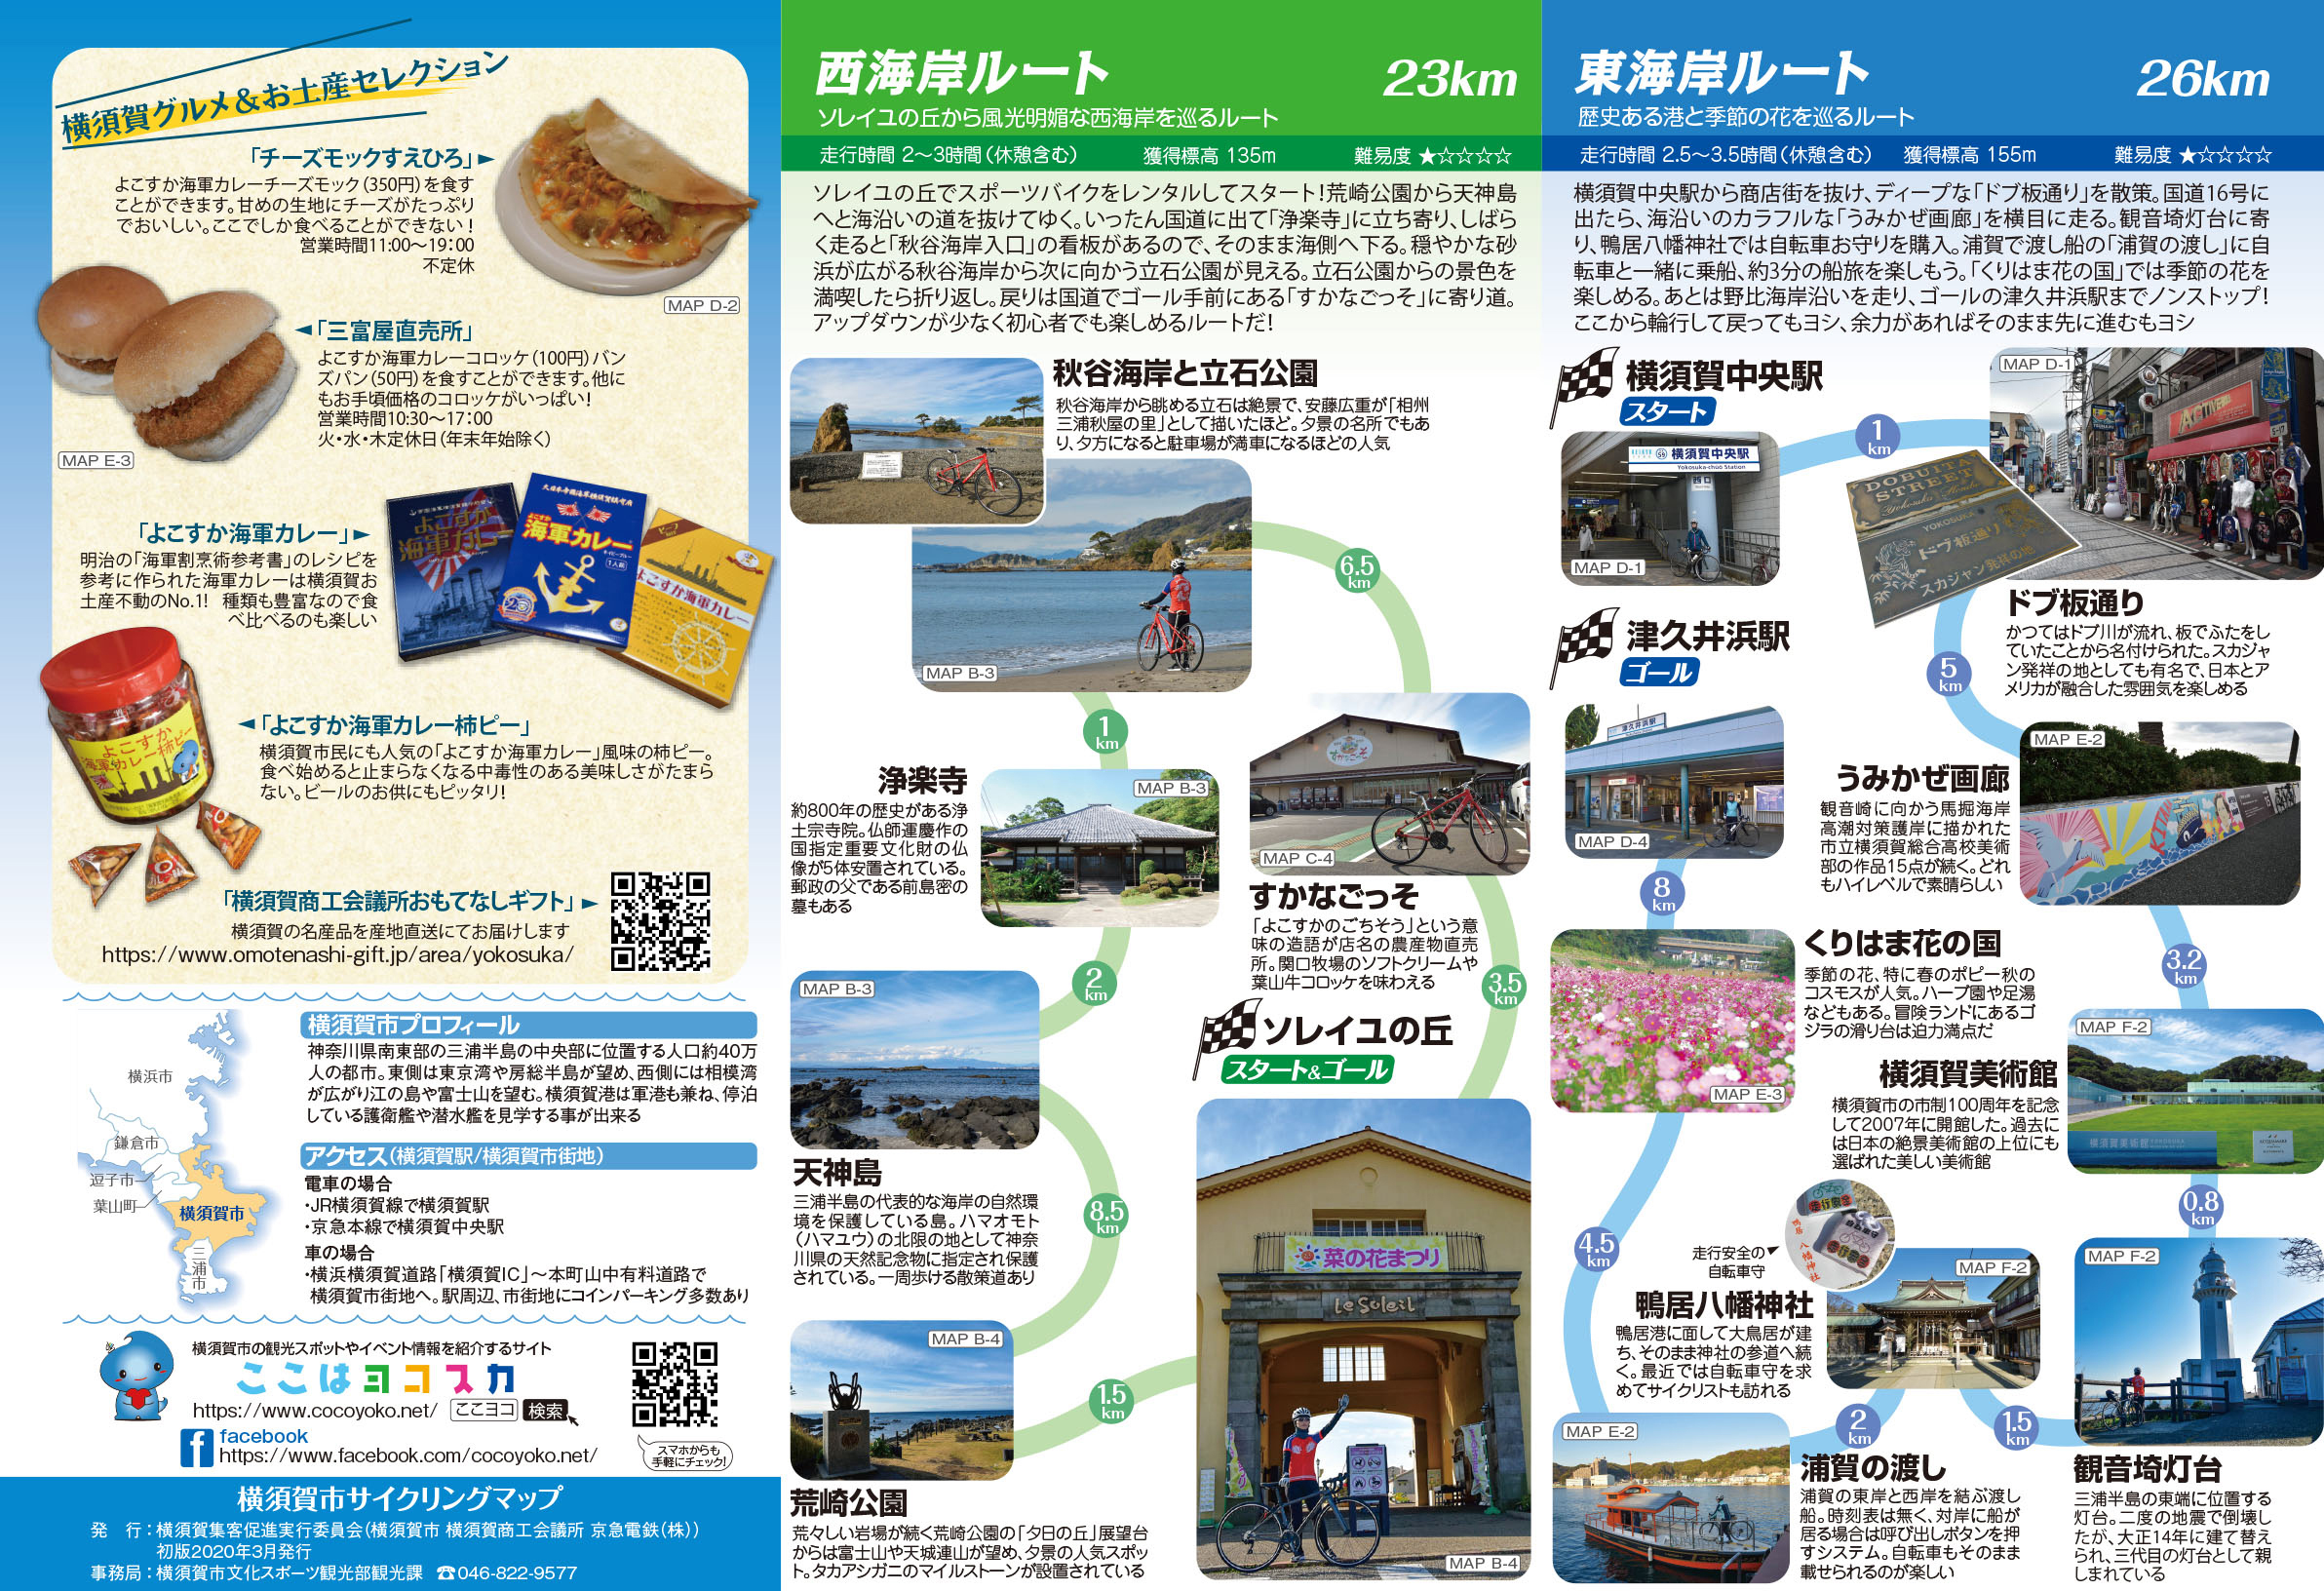 横須賀サイクリング 旬の情報 横須賀市観光情報サイト ここはヨコスカ